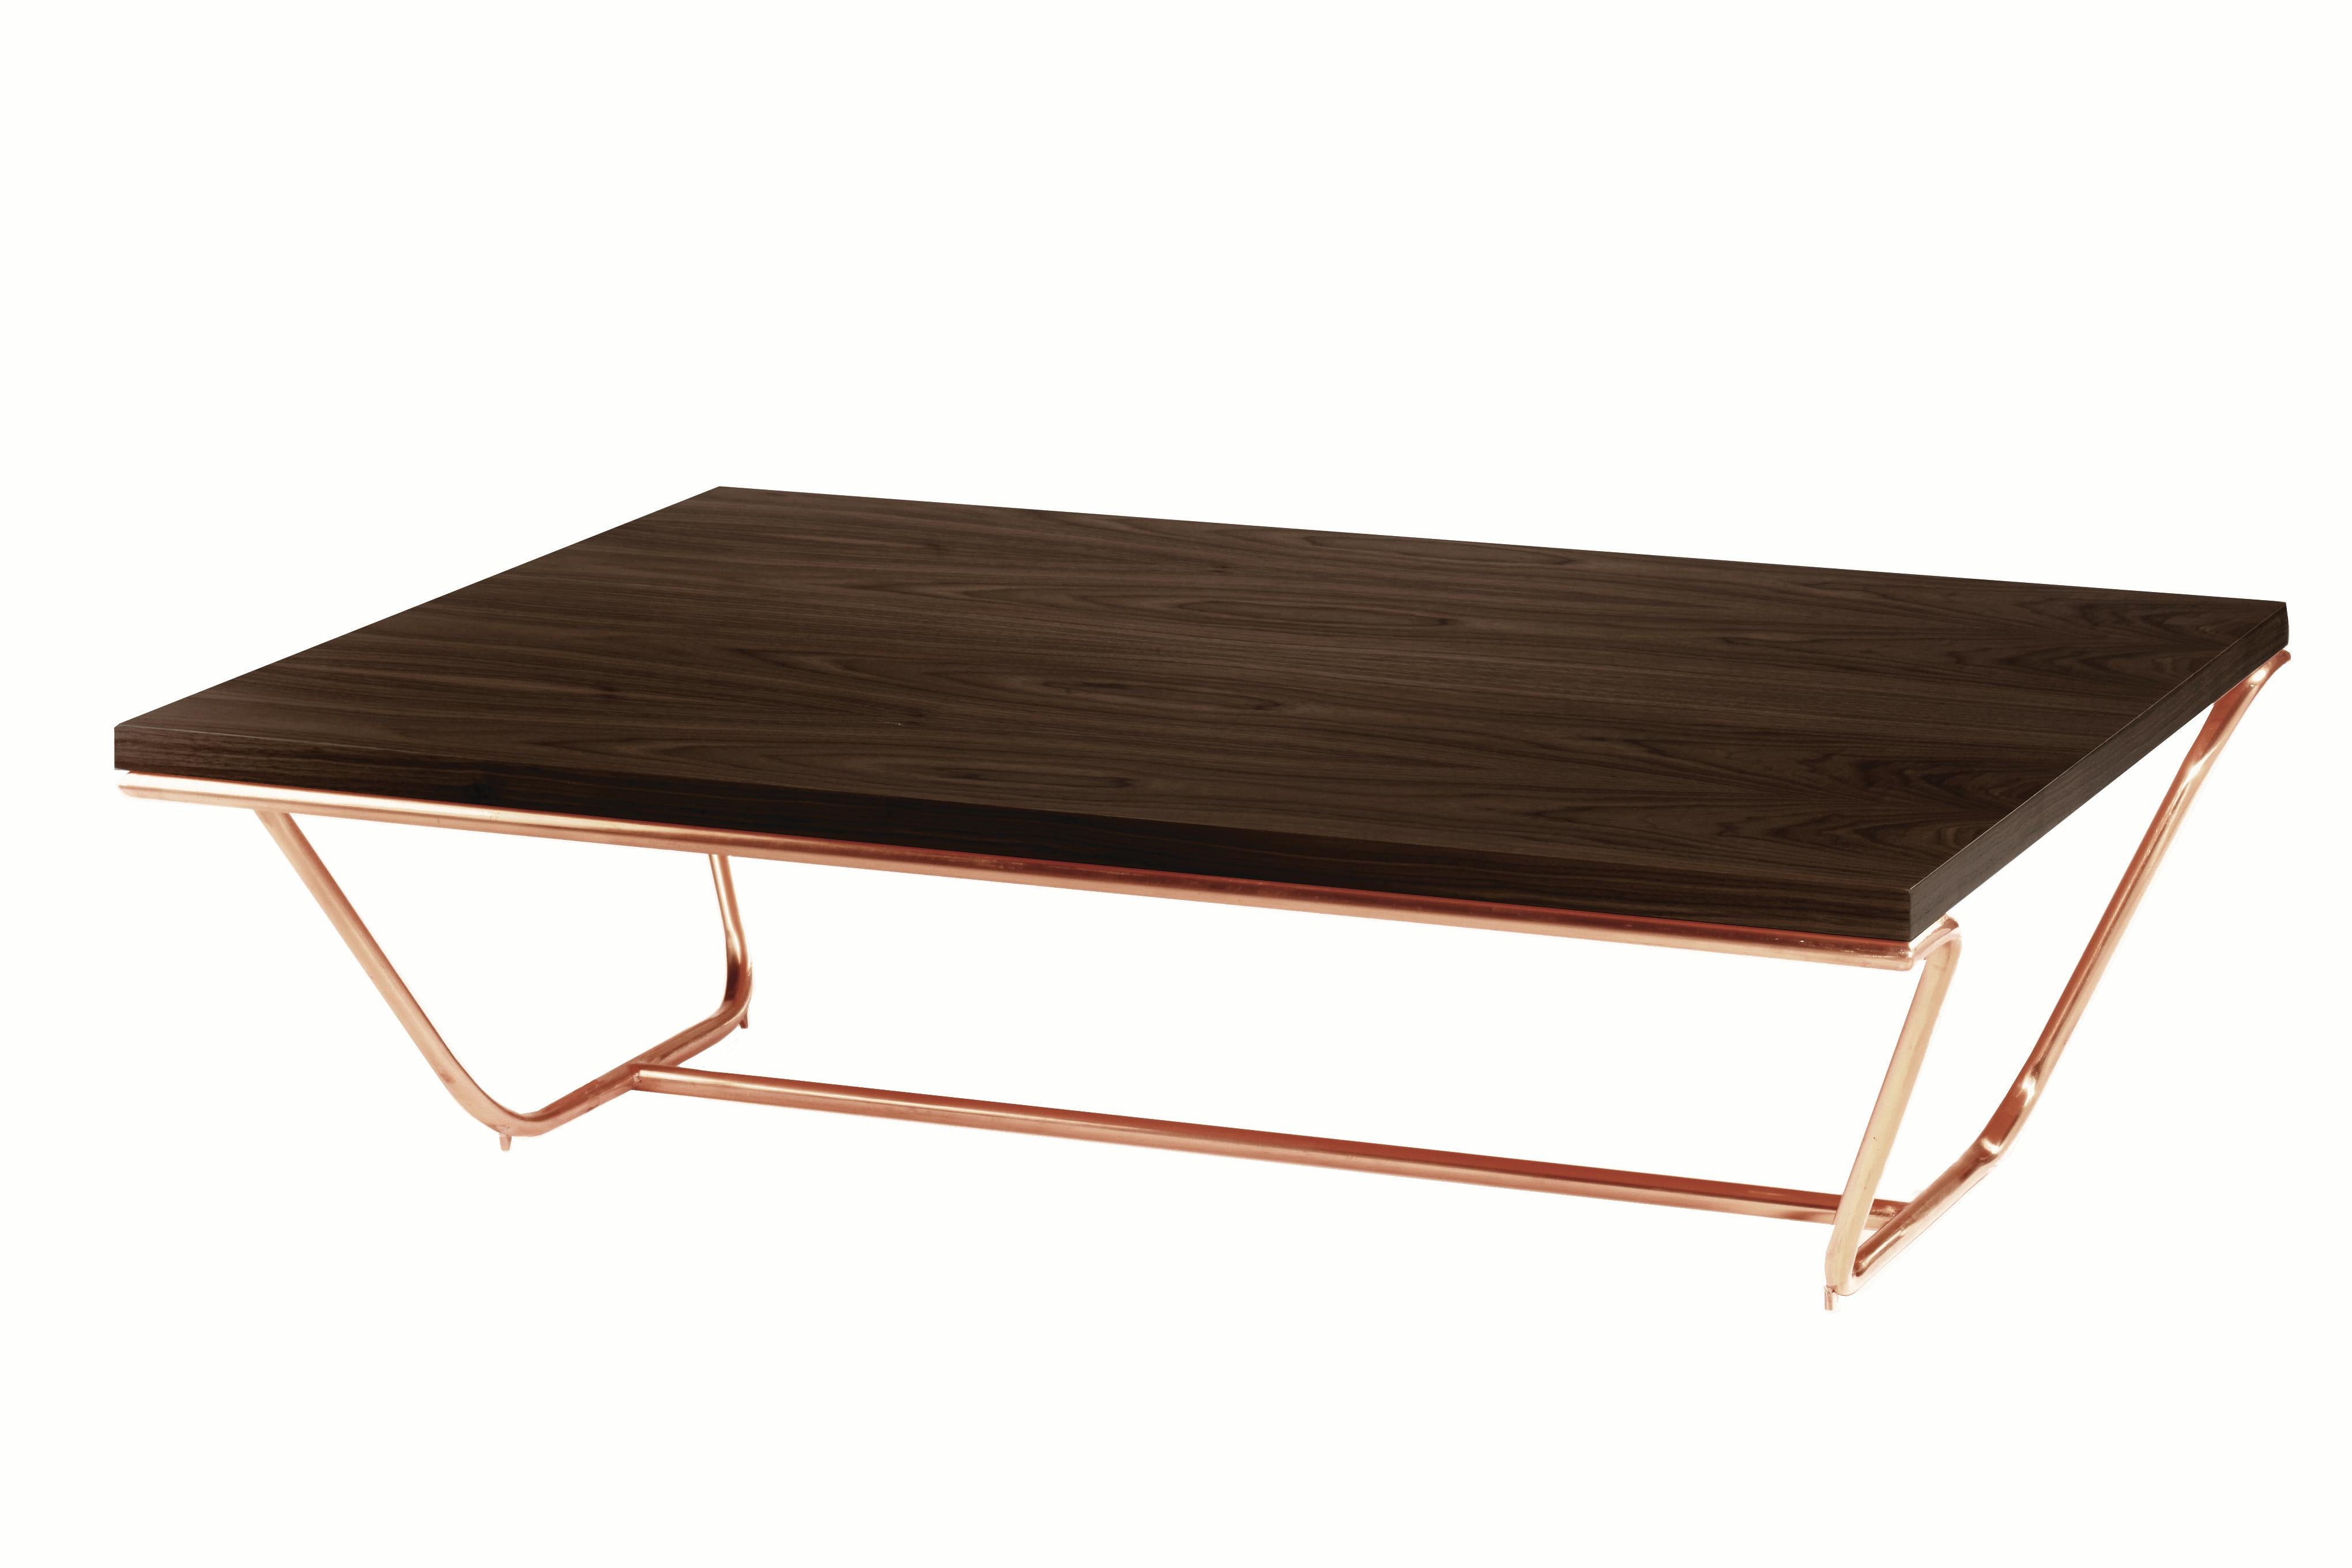 Arme aus Messing oder Kupfer halten eine luxuriöse Holztischplatte. Die Eleganz dieser Tische, bei denen sich die Elemente nahtlos aneinanderfügen und der Sockel die Platte umarmt, hat eine fast greifbare musikalische Präsenz, die es zu entdecken